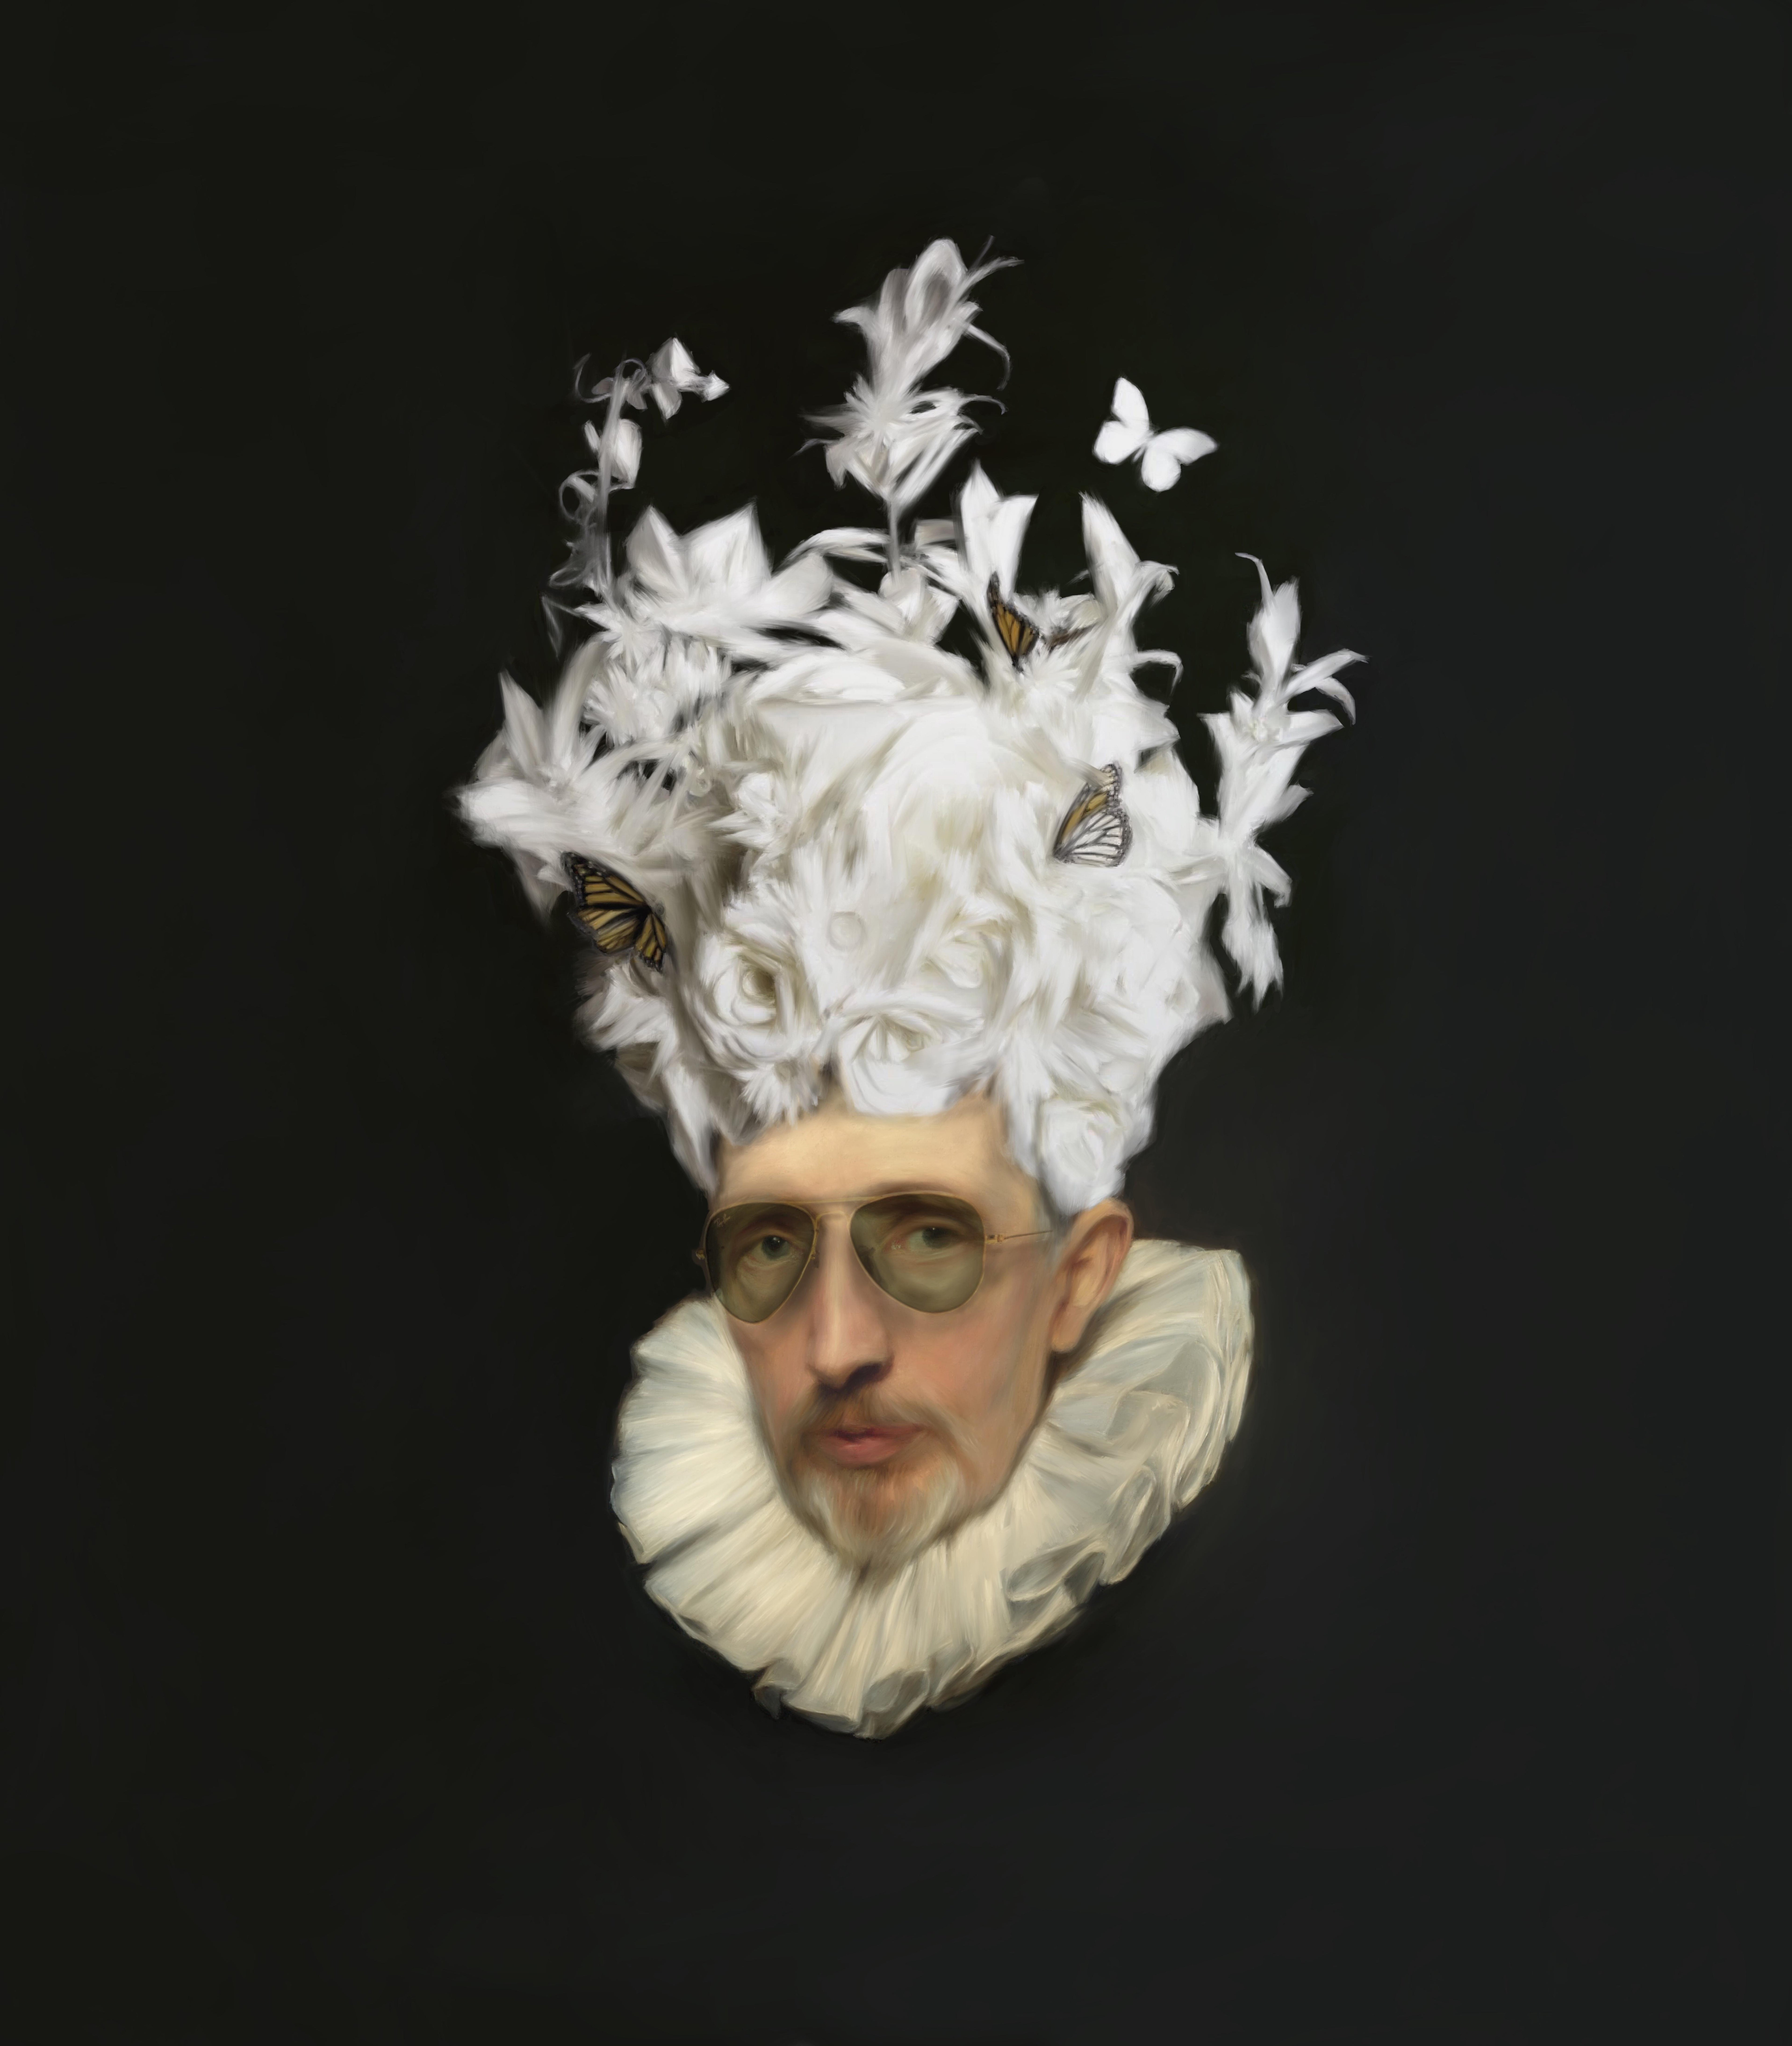 Pablo de Pinini Portrait Print - Baroque carnival. Surreal black and white portrait inspired in Old master's 